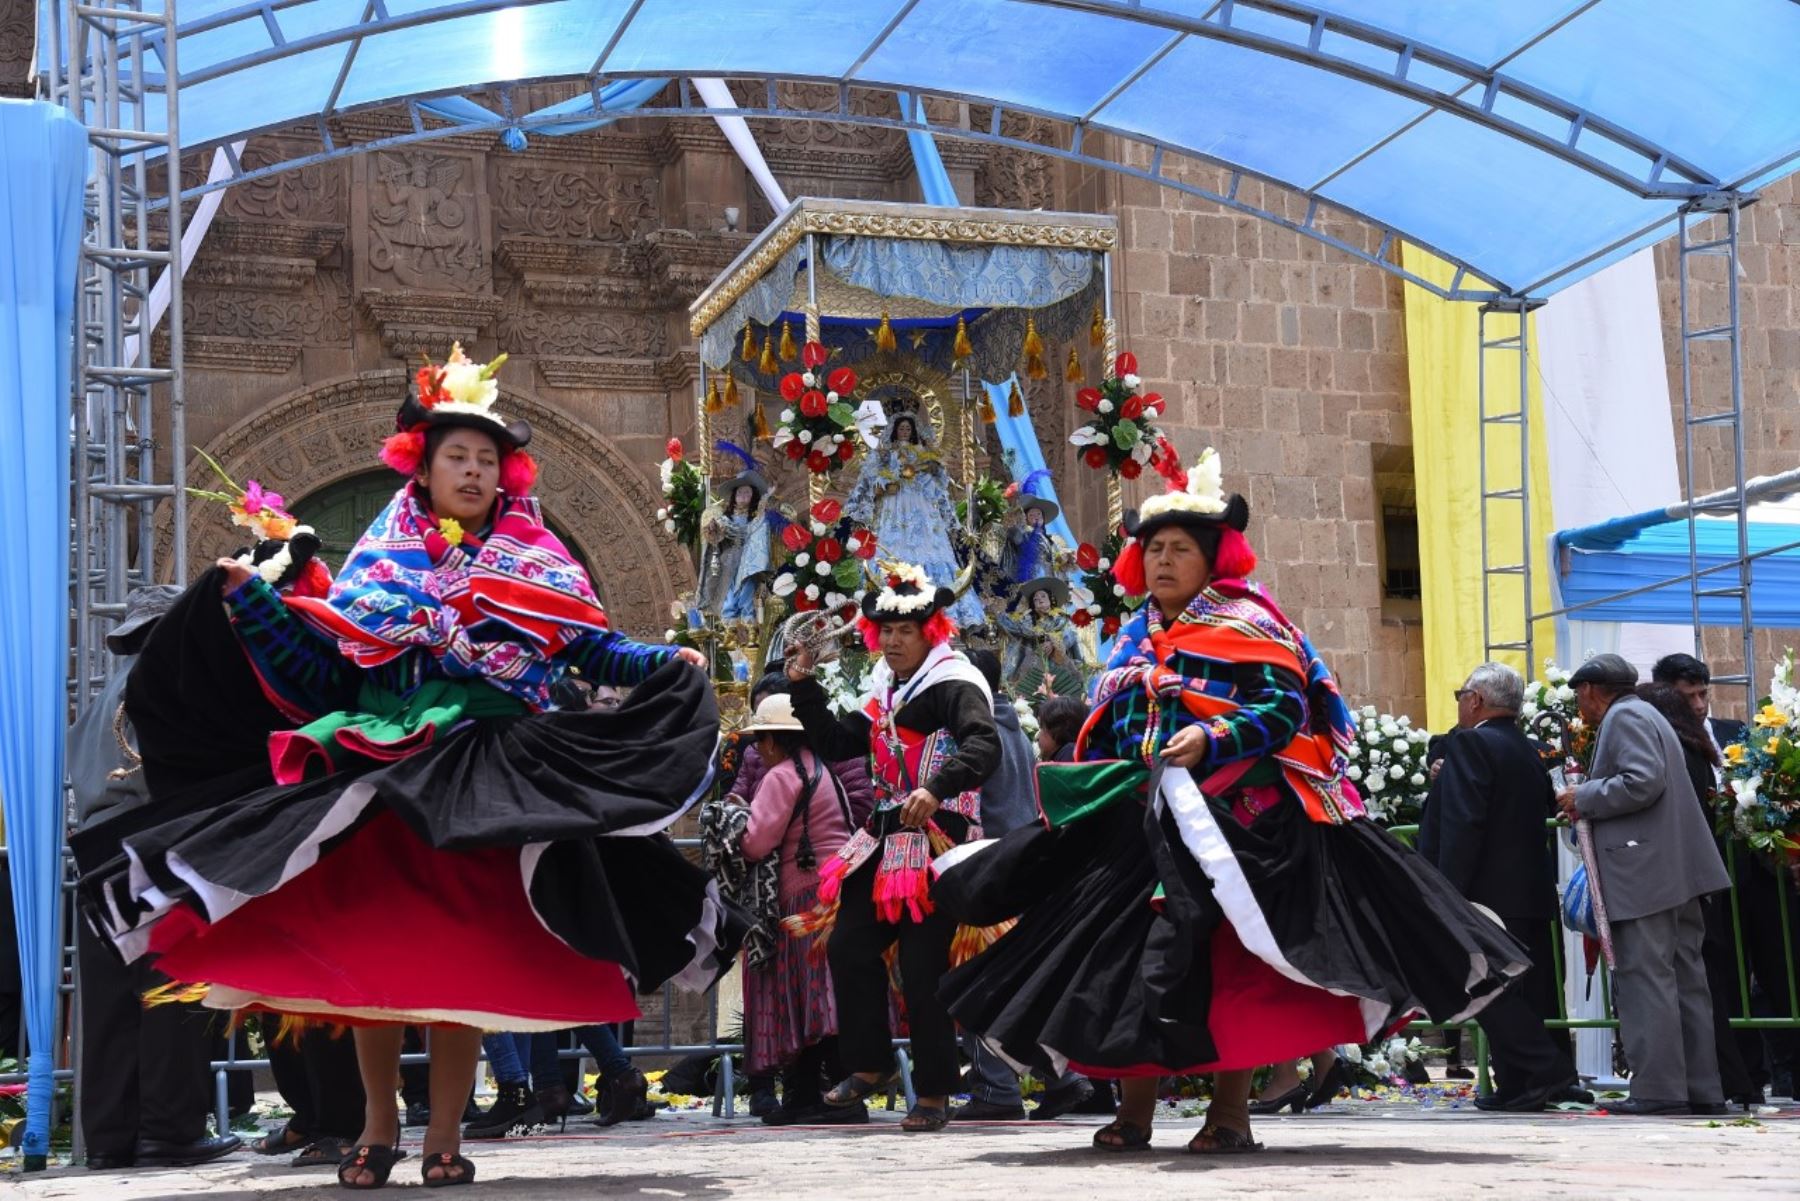 Uno de los hitos más relevantes de la festividad en honor de la Virgen de la Candelaria es la Octava, en la que se desarrollan ritos religiosos donde se venera con profunda fe y devoción a la patrona de Puno, y también un fastuoso despliegue de conjuntos de danzas y música que evidencian por qué se considera a esta región altiplánica como la capital del folclor peruano. ANDINA/Difusión